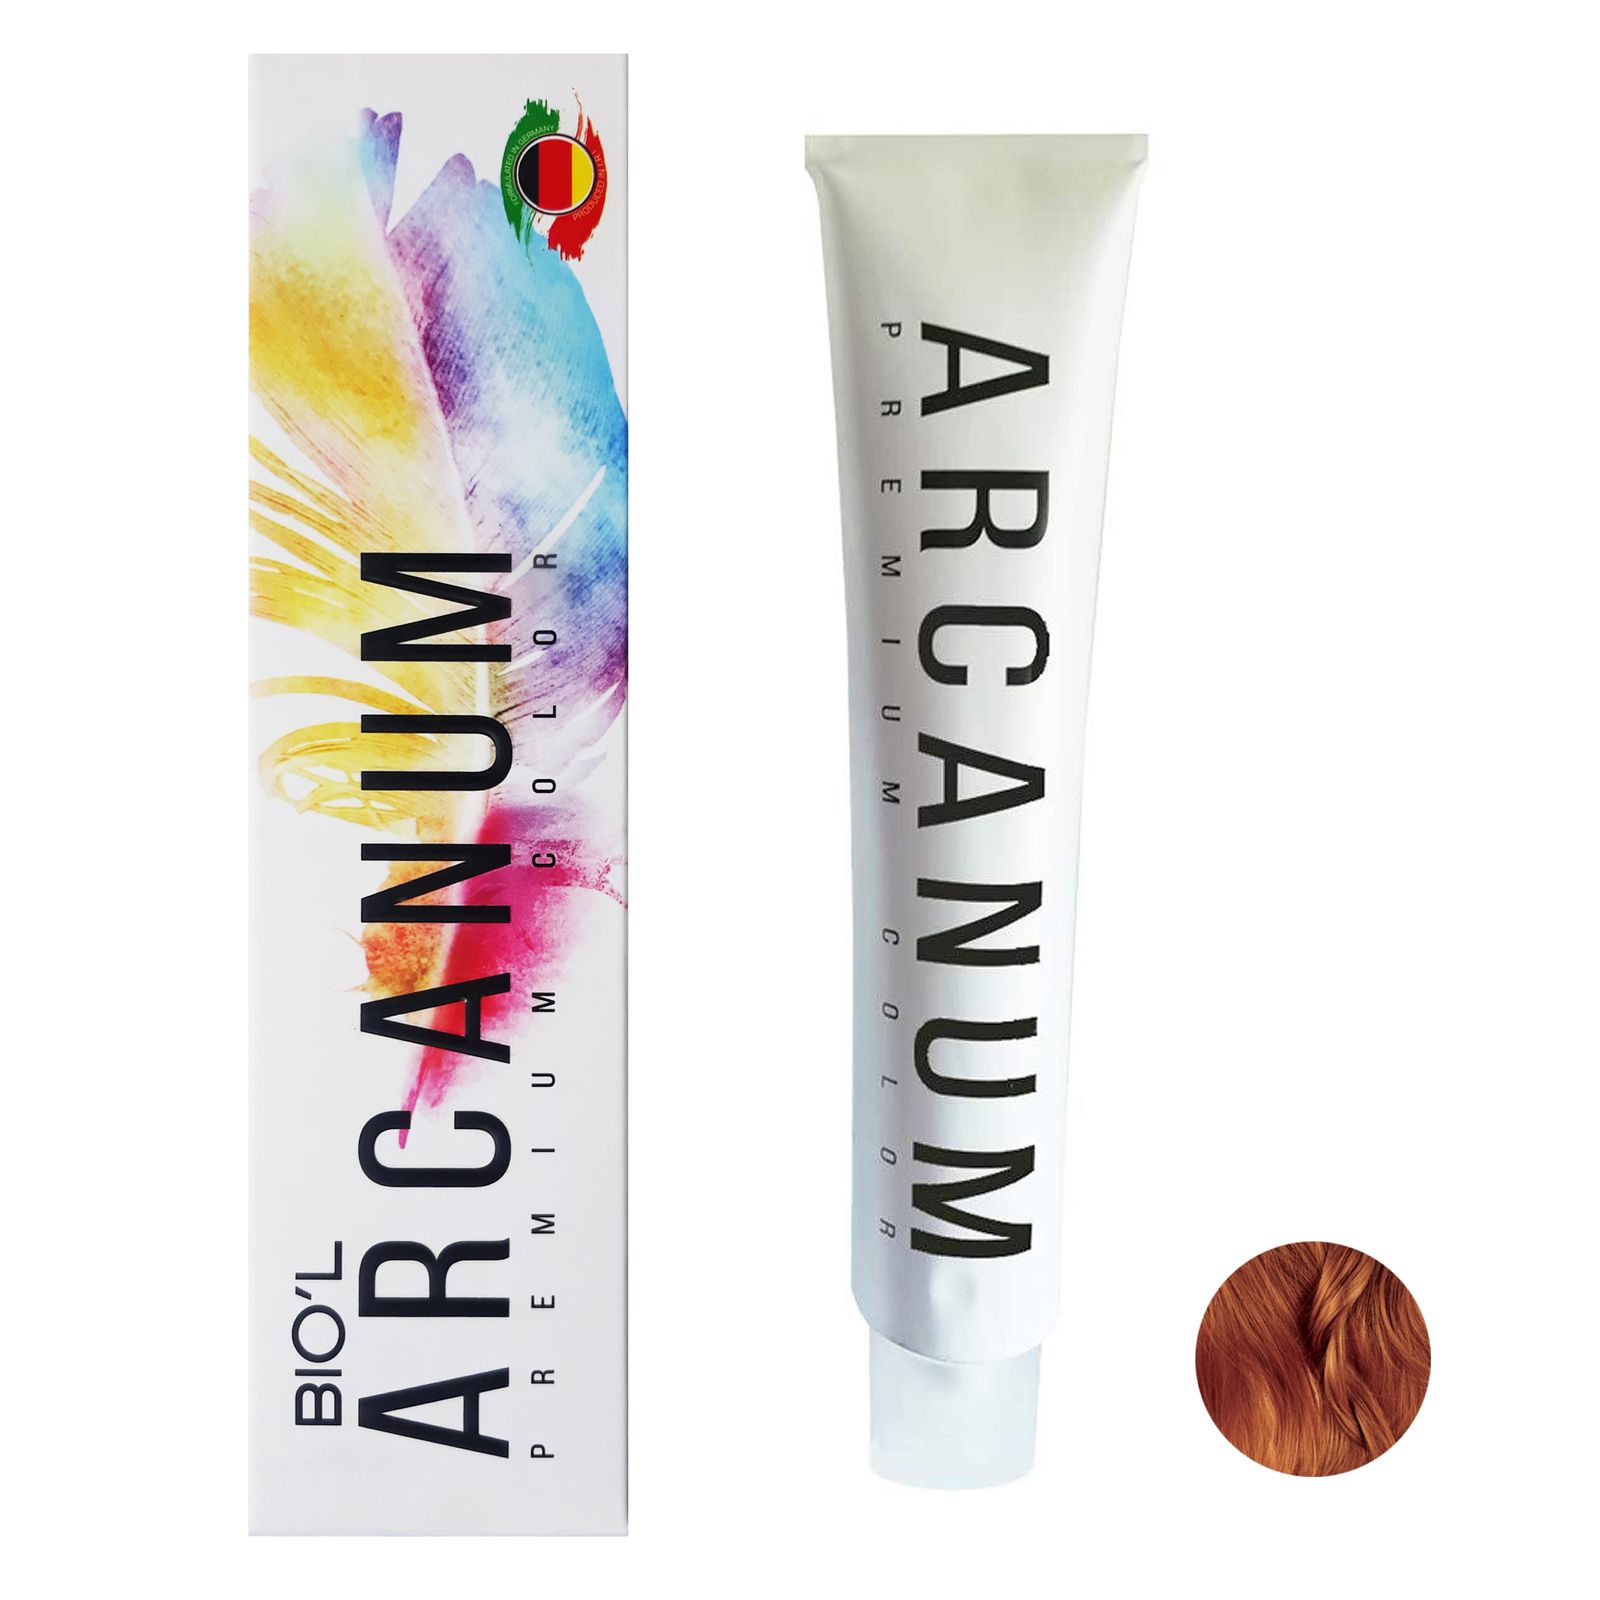  رنگ مو بیول مدل Arcanum شماره 6.84 حجم 120 میلی لیتر رنگ بلوند شکلاتی پرتغالی تیره -  - 2